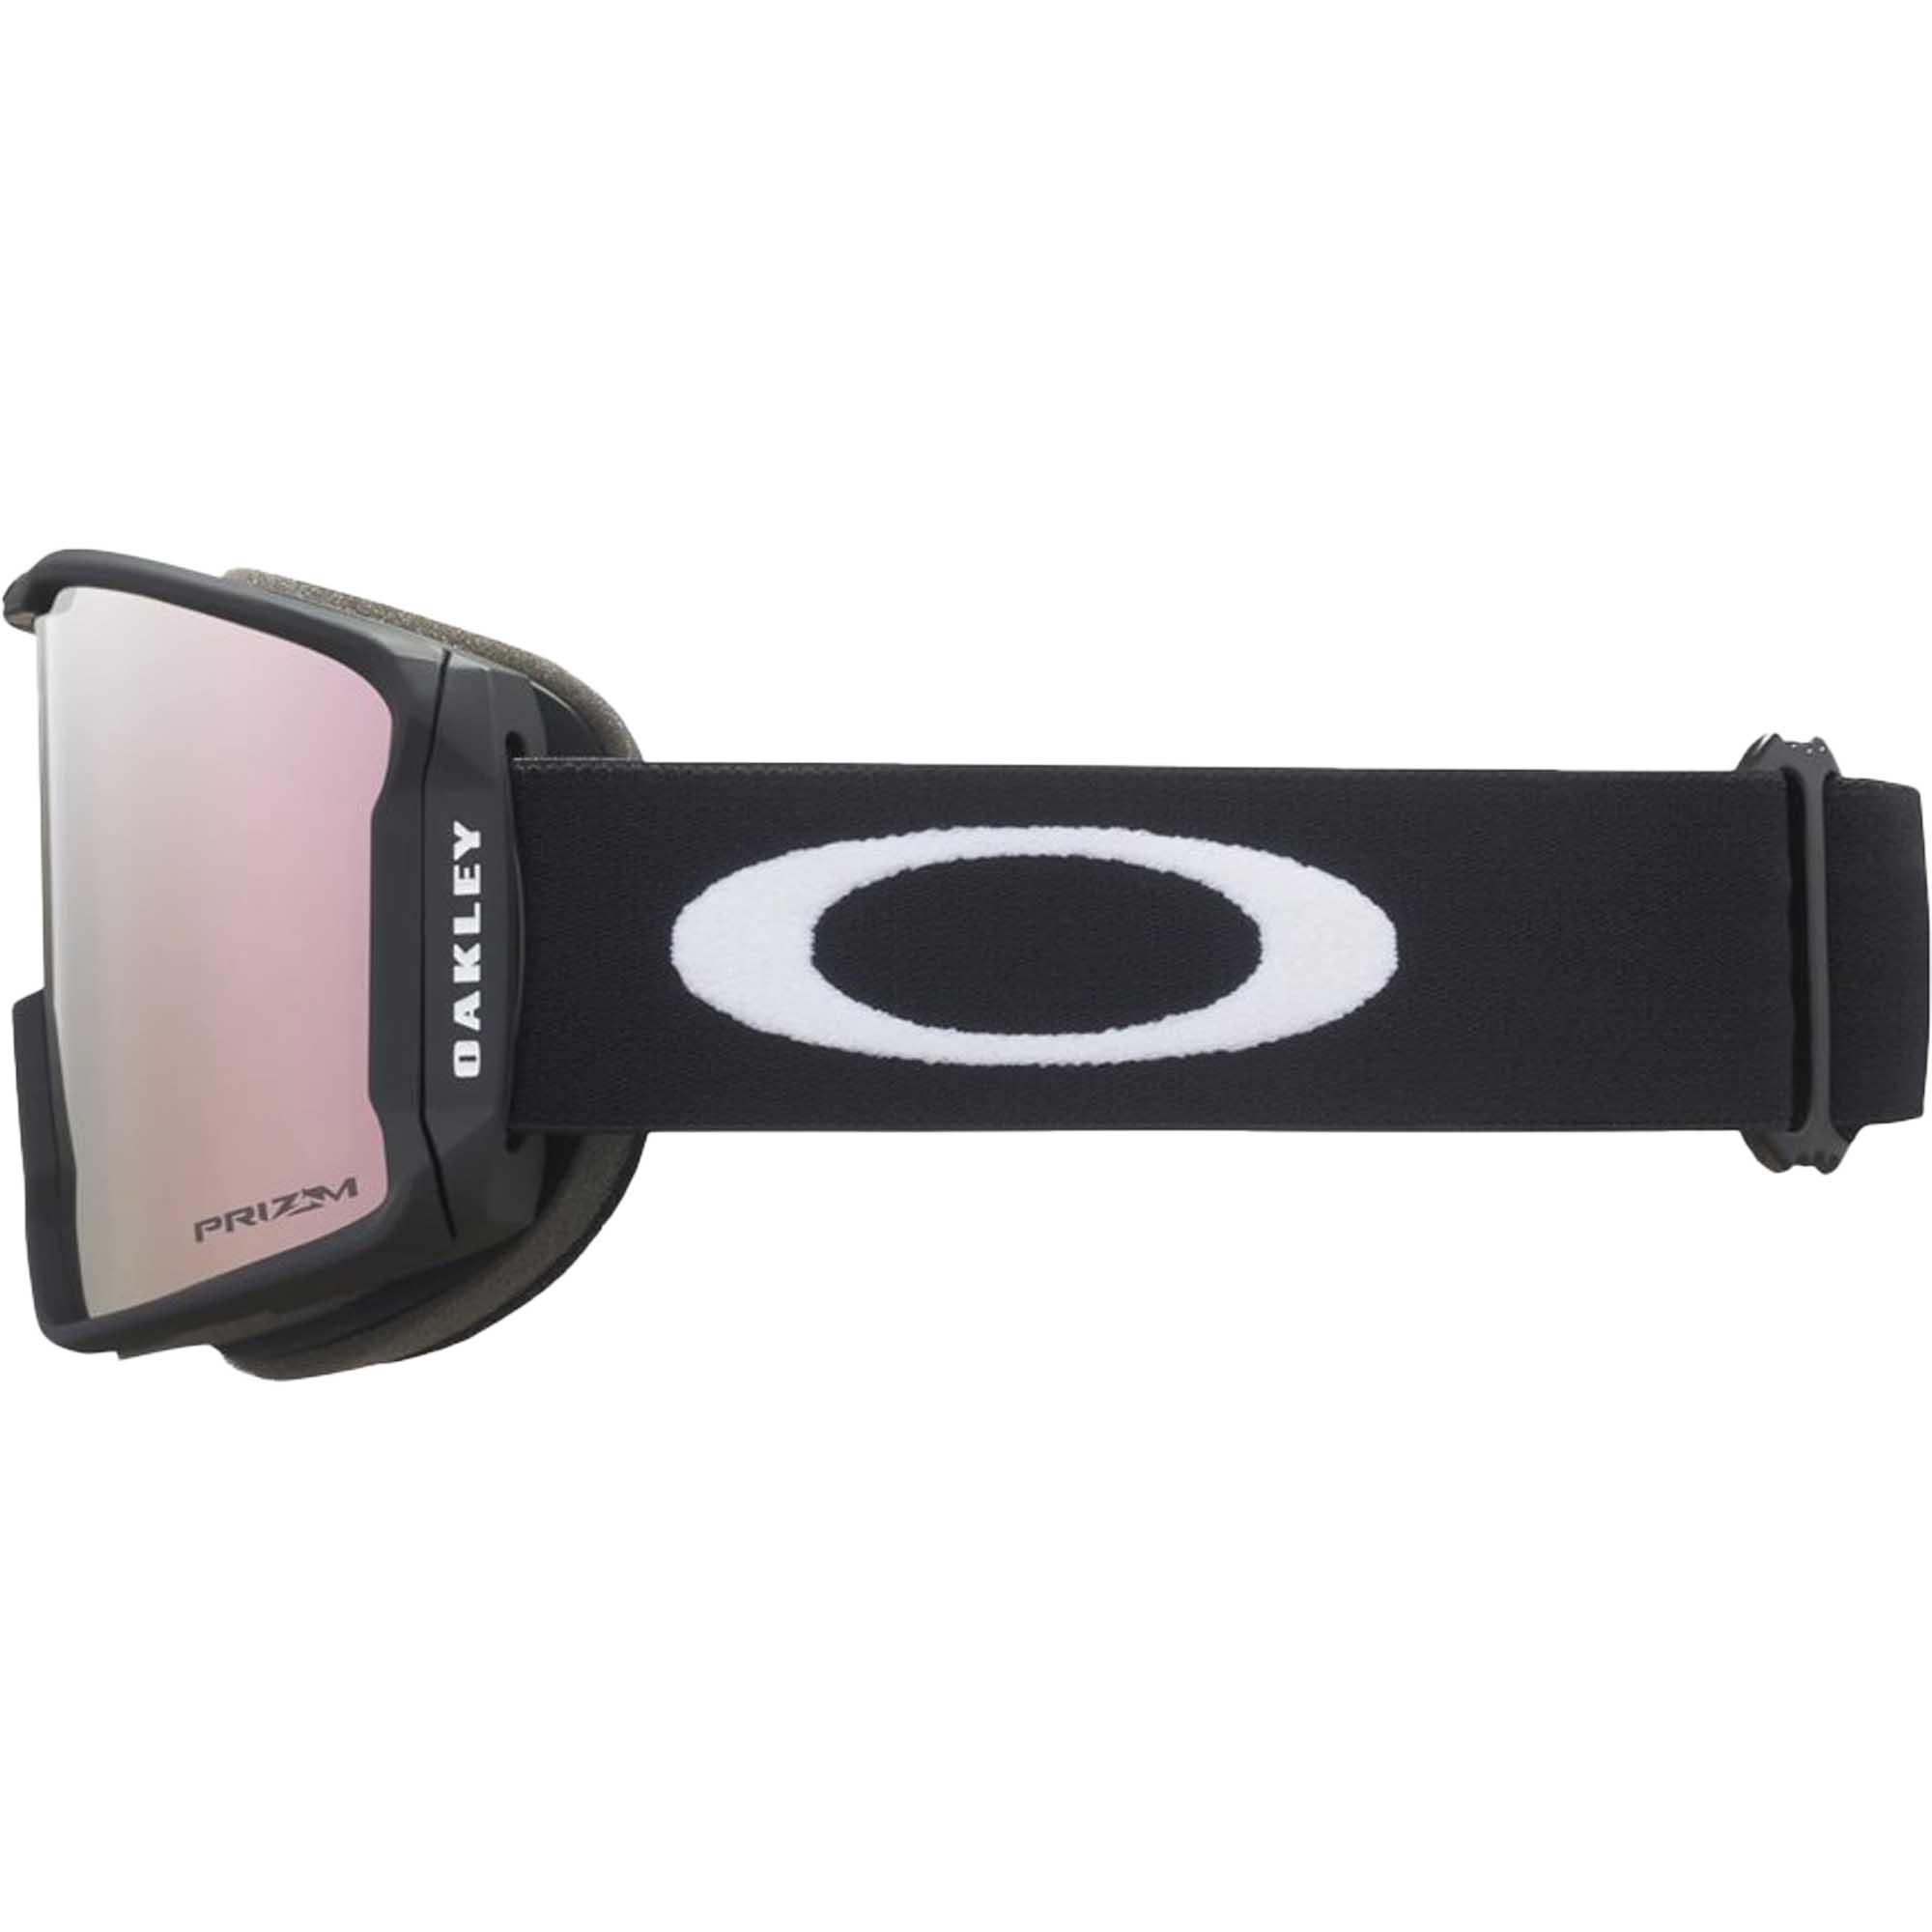 Oakley Line Miner M Snowboard/Ski Goggles